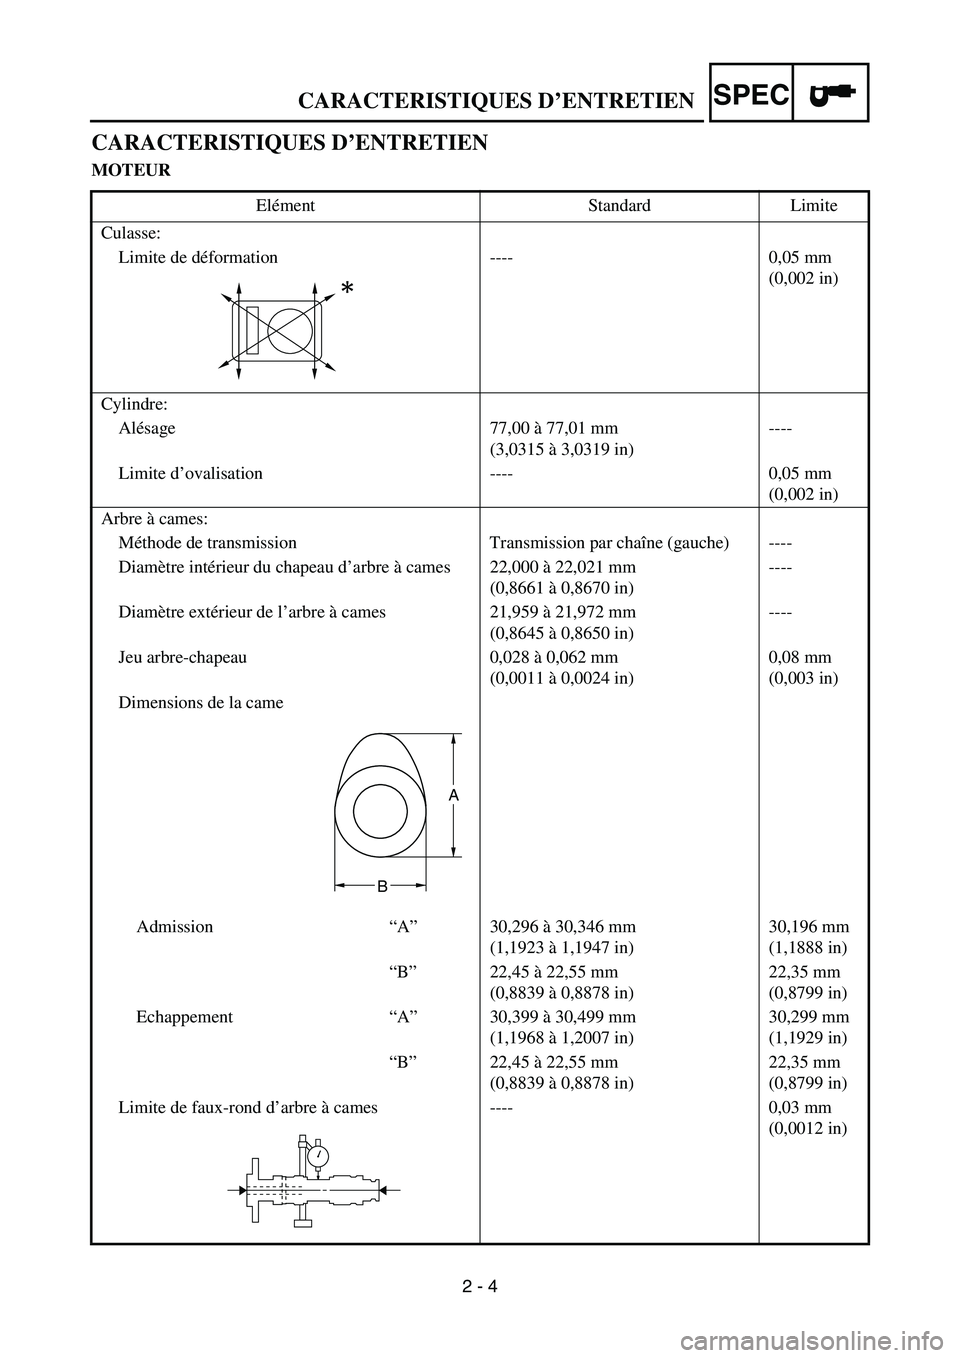 YAMAHA YZ250F 2005  Notices Demploi (in French) SPEC
2 - 4
CARACTERISTIQUES D’ENTRETIEN
MOTEUR
Elément Standard Limite
Culasse:
Limite de déformation ---- 0,05 mm 
(0,002 in)
Cylindre:
Alésage 77,00 à 77,01 mm
(3,0315 à 3,0319 in)----
Limite